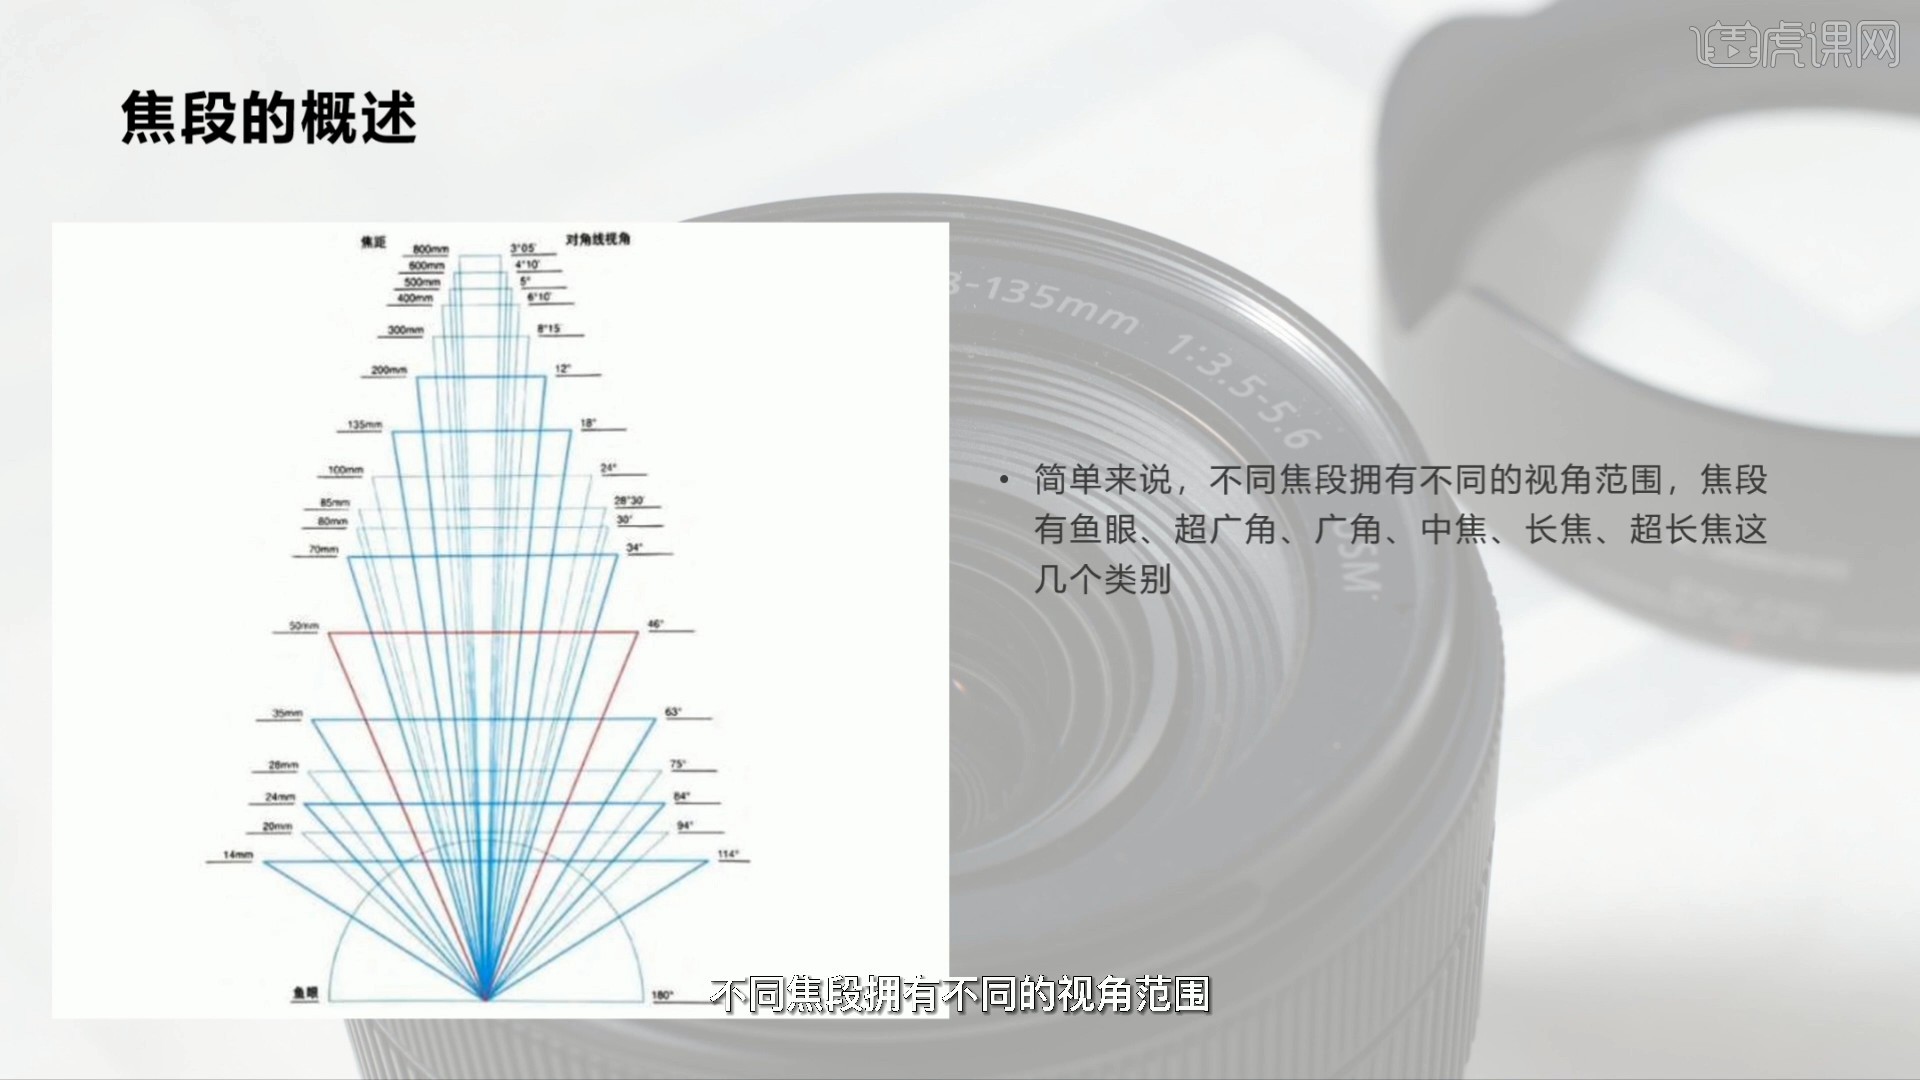 经典定焦镜头 佳能35mm F1.4 II试用体验_器材频道-蜂鸟网